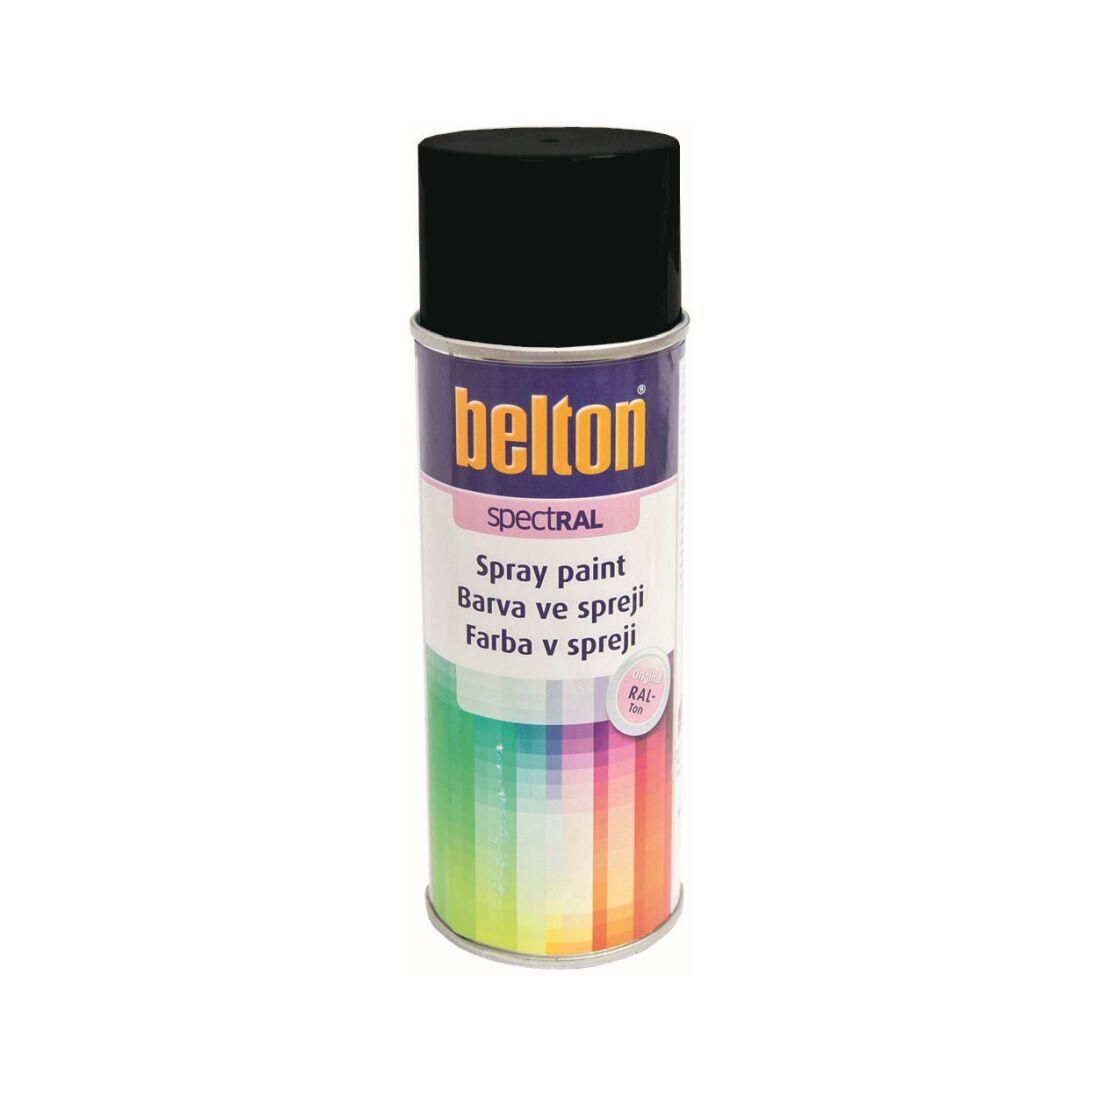 barva ve spreji BELTON RAL 9005pl, 400ml ČER pololesklá 0.31 Kg MAXMIX Sklad14 825570 3